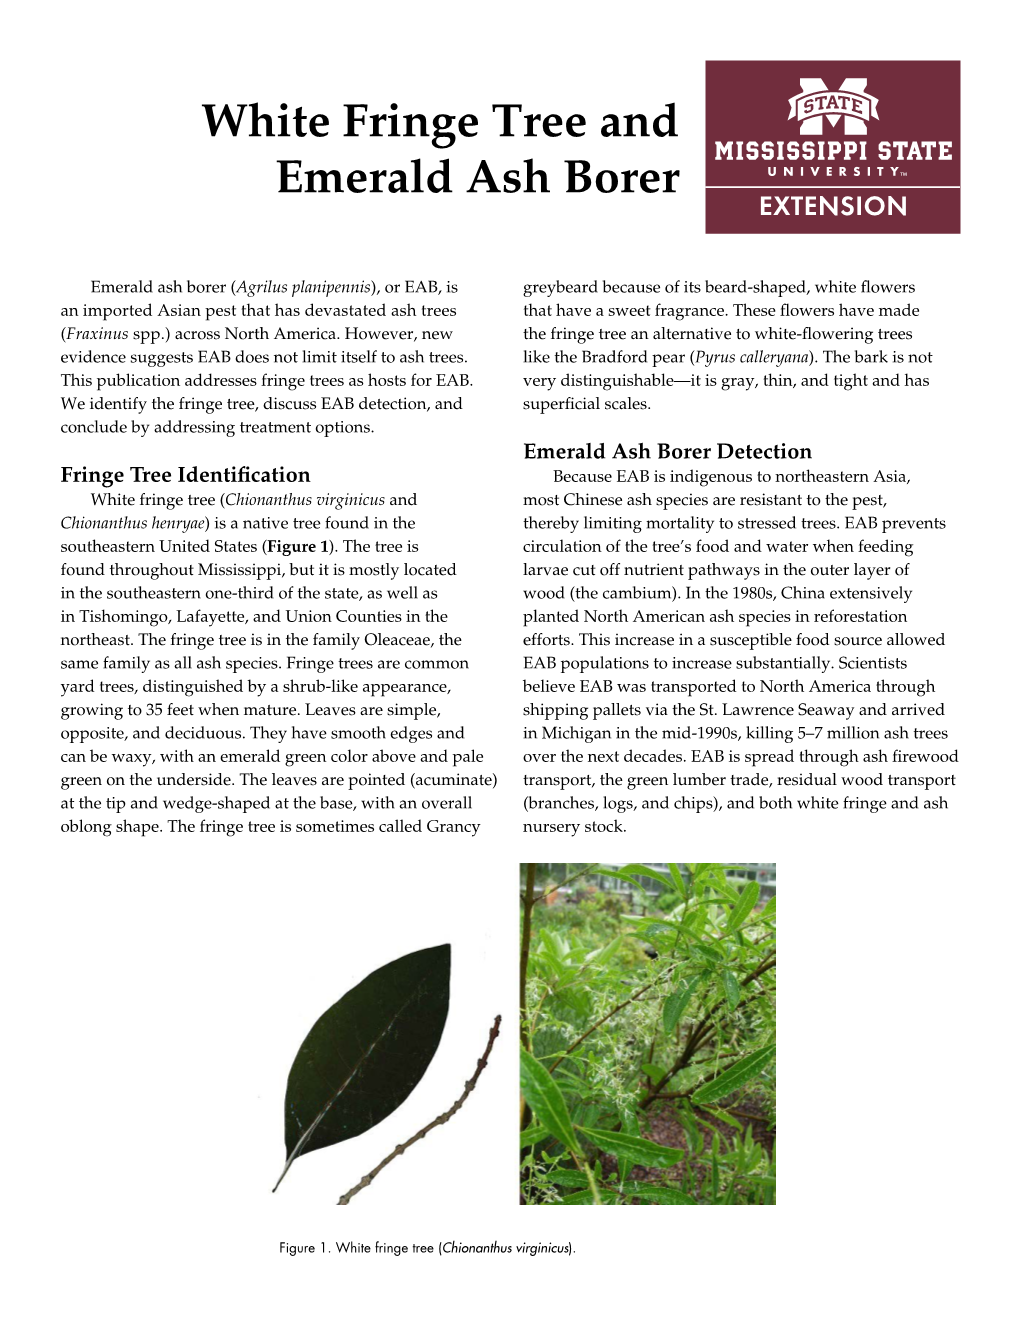 White Fringe Tree and Emerald Ash Borer